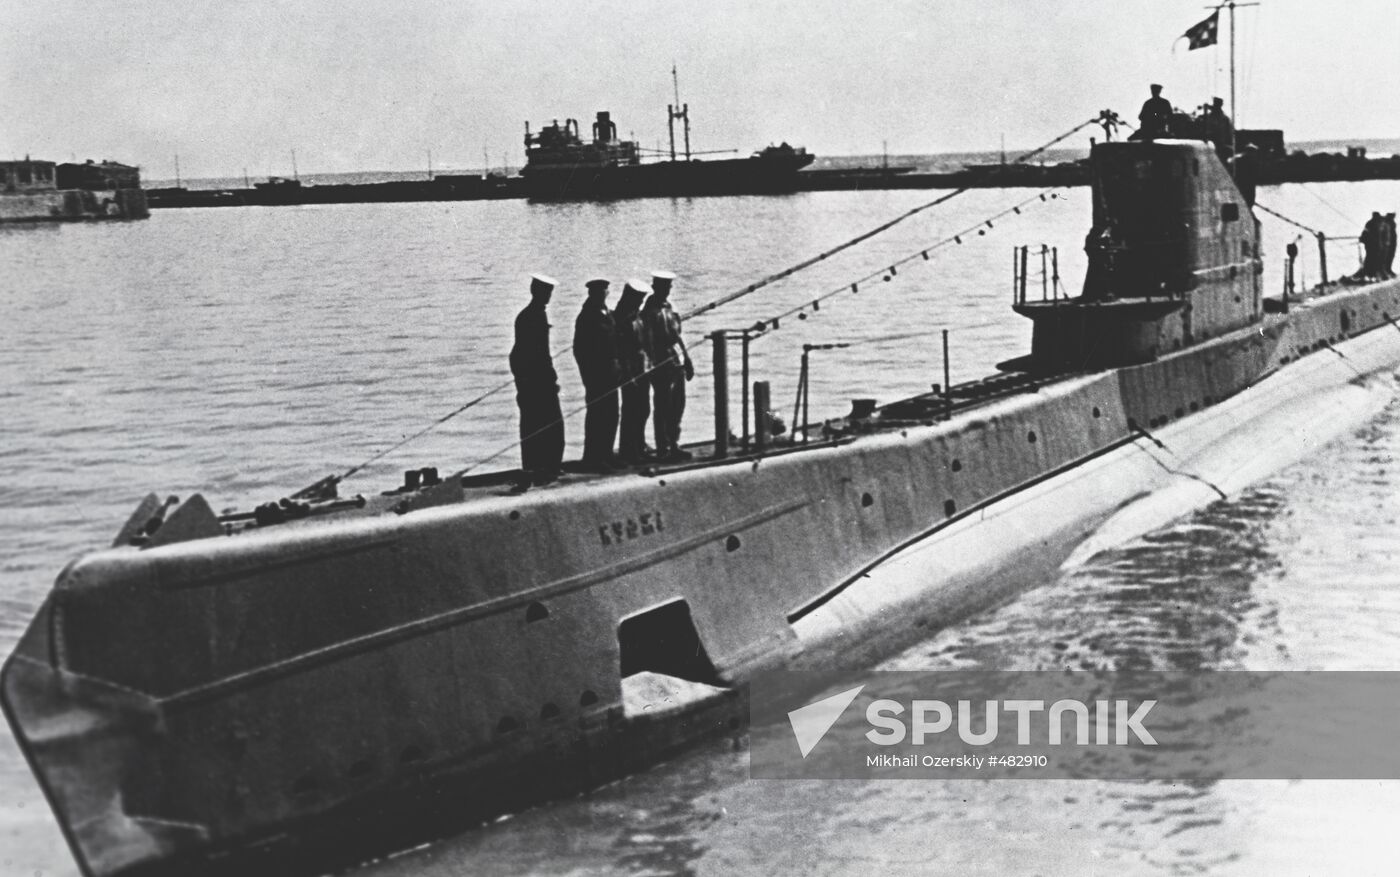 Tshch class submarine